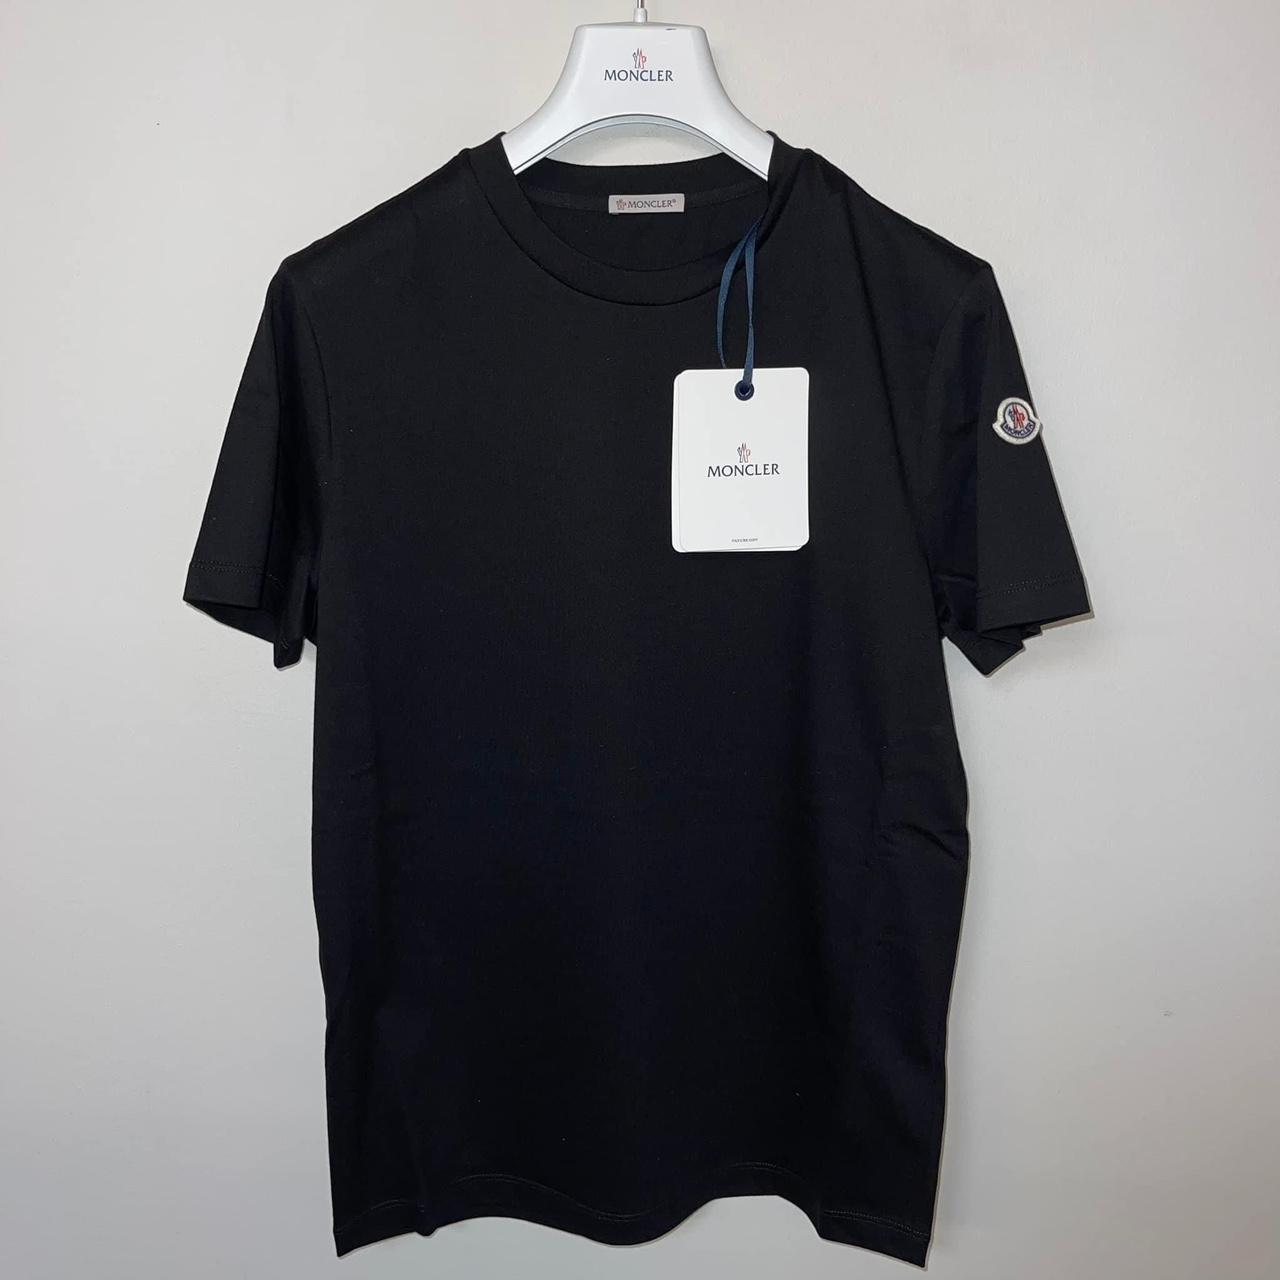 Moncler Mens logo tshirts in black Size S - 19,5’... - Depop